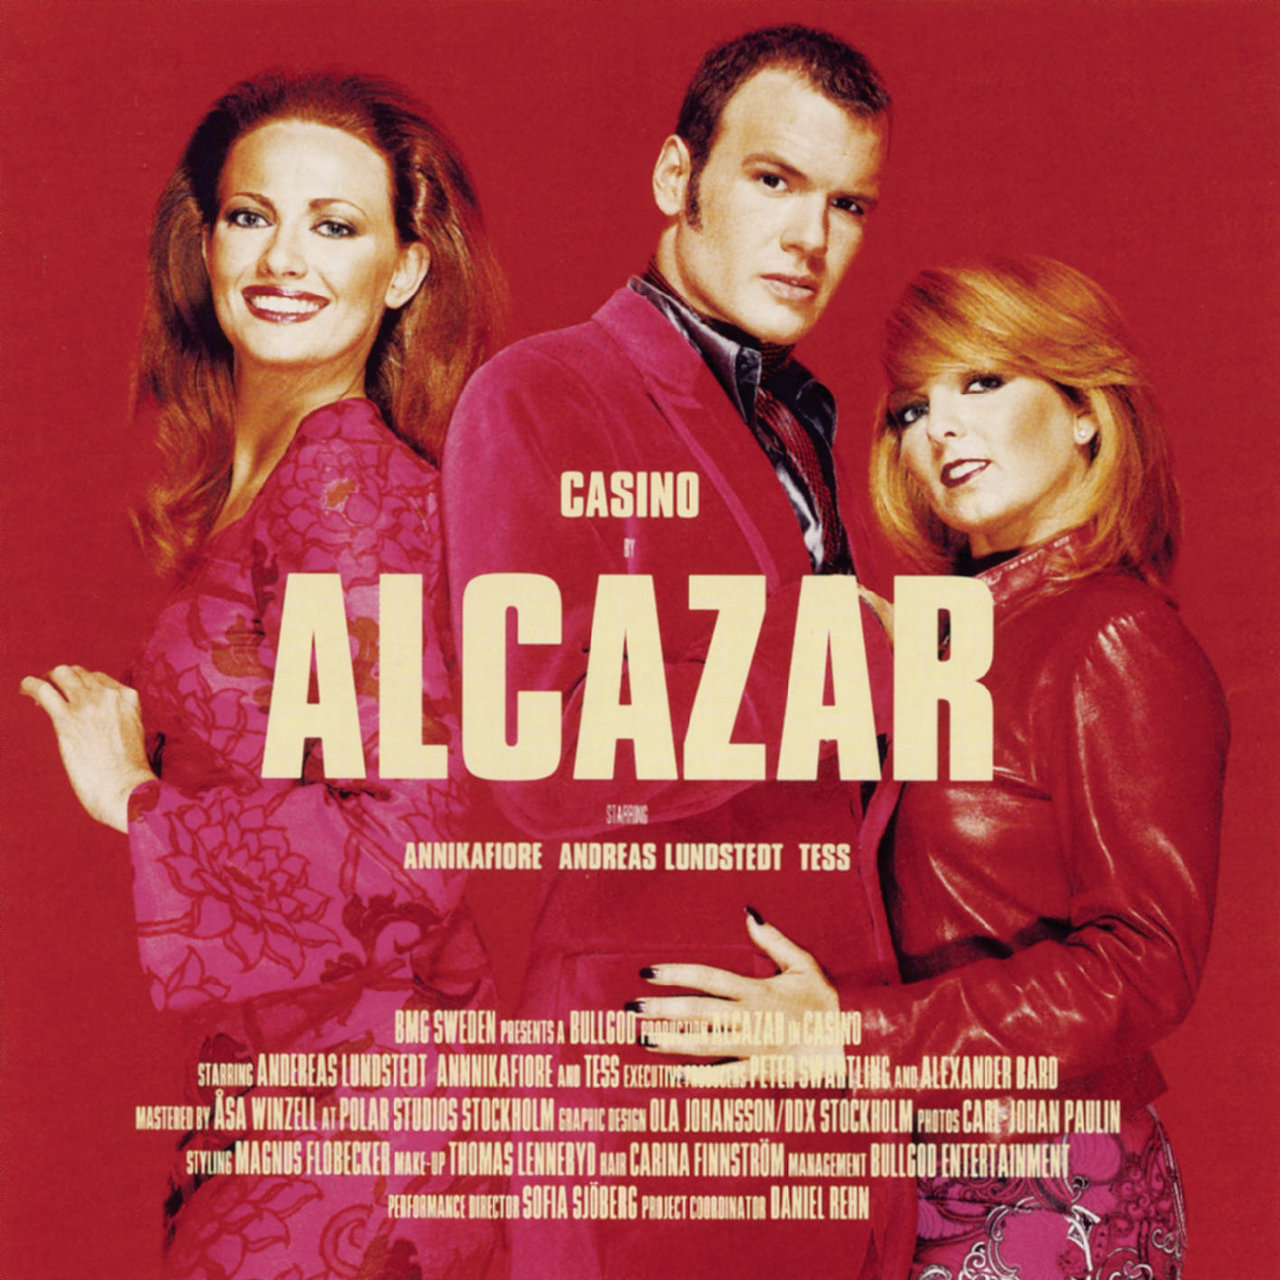 Alcazar Casino cover artwork